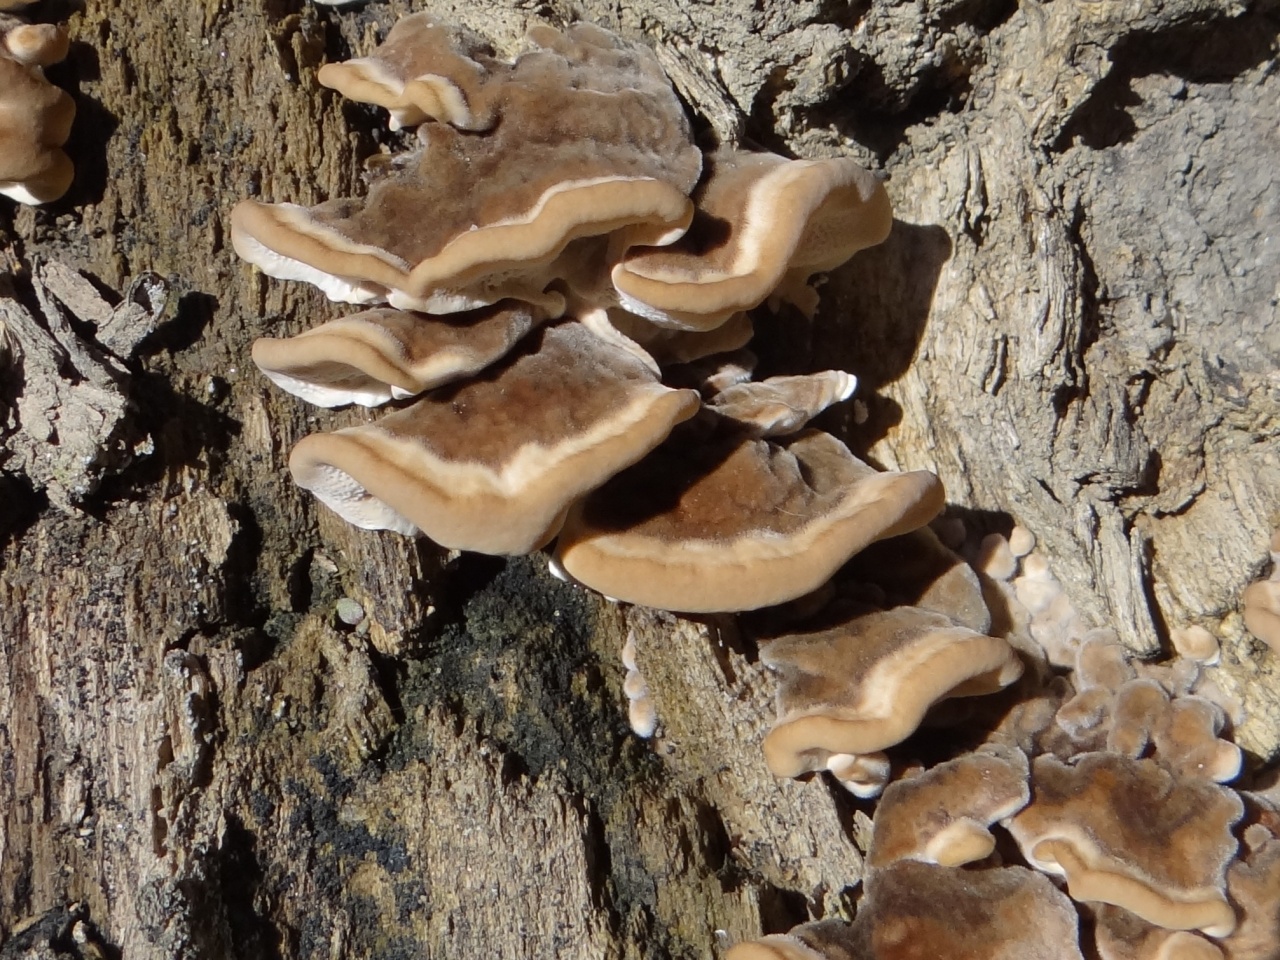 Съедобные грибы воронежской области: весенние, летние, осенние, описание, сроки сбора, грибные места